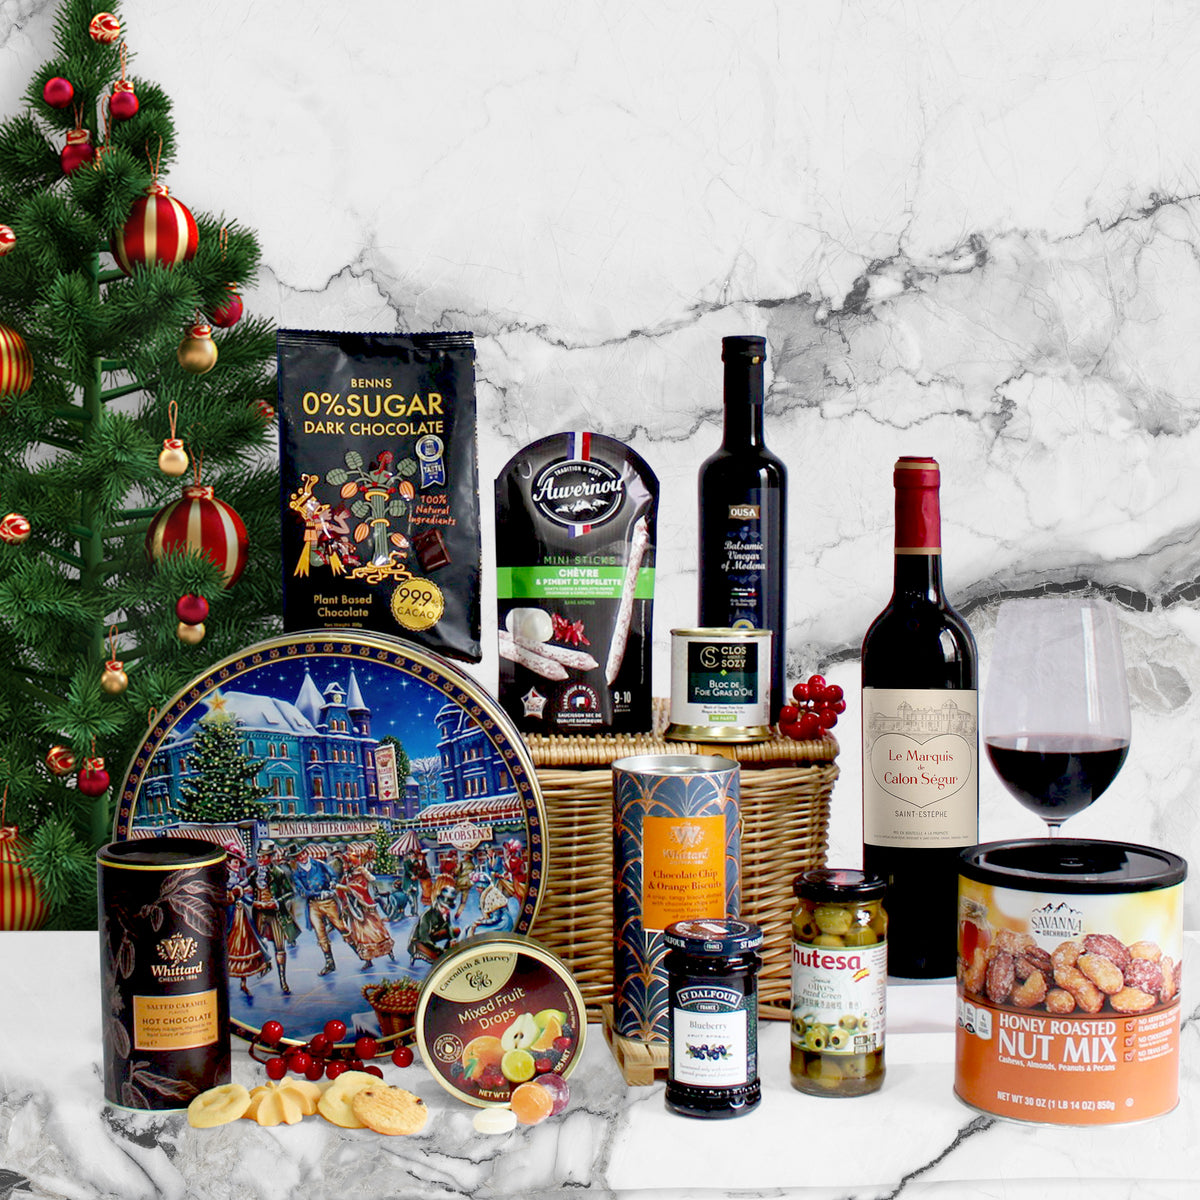 Christmas Hamper|Christmas Luxurious Food Gift Hamper ,Red Wine Cookies Gift Basket